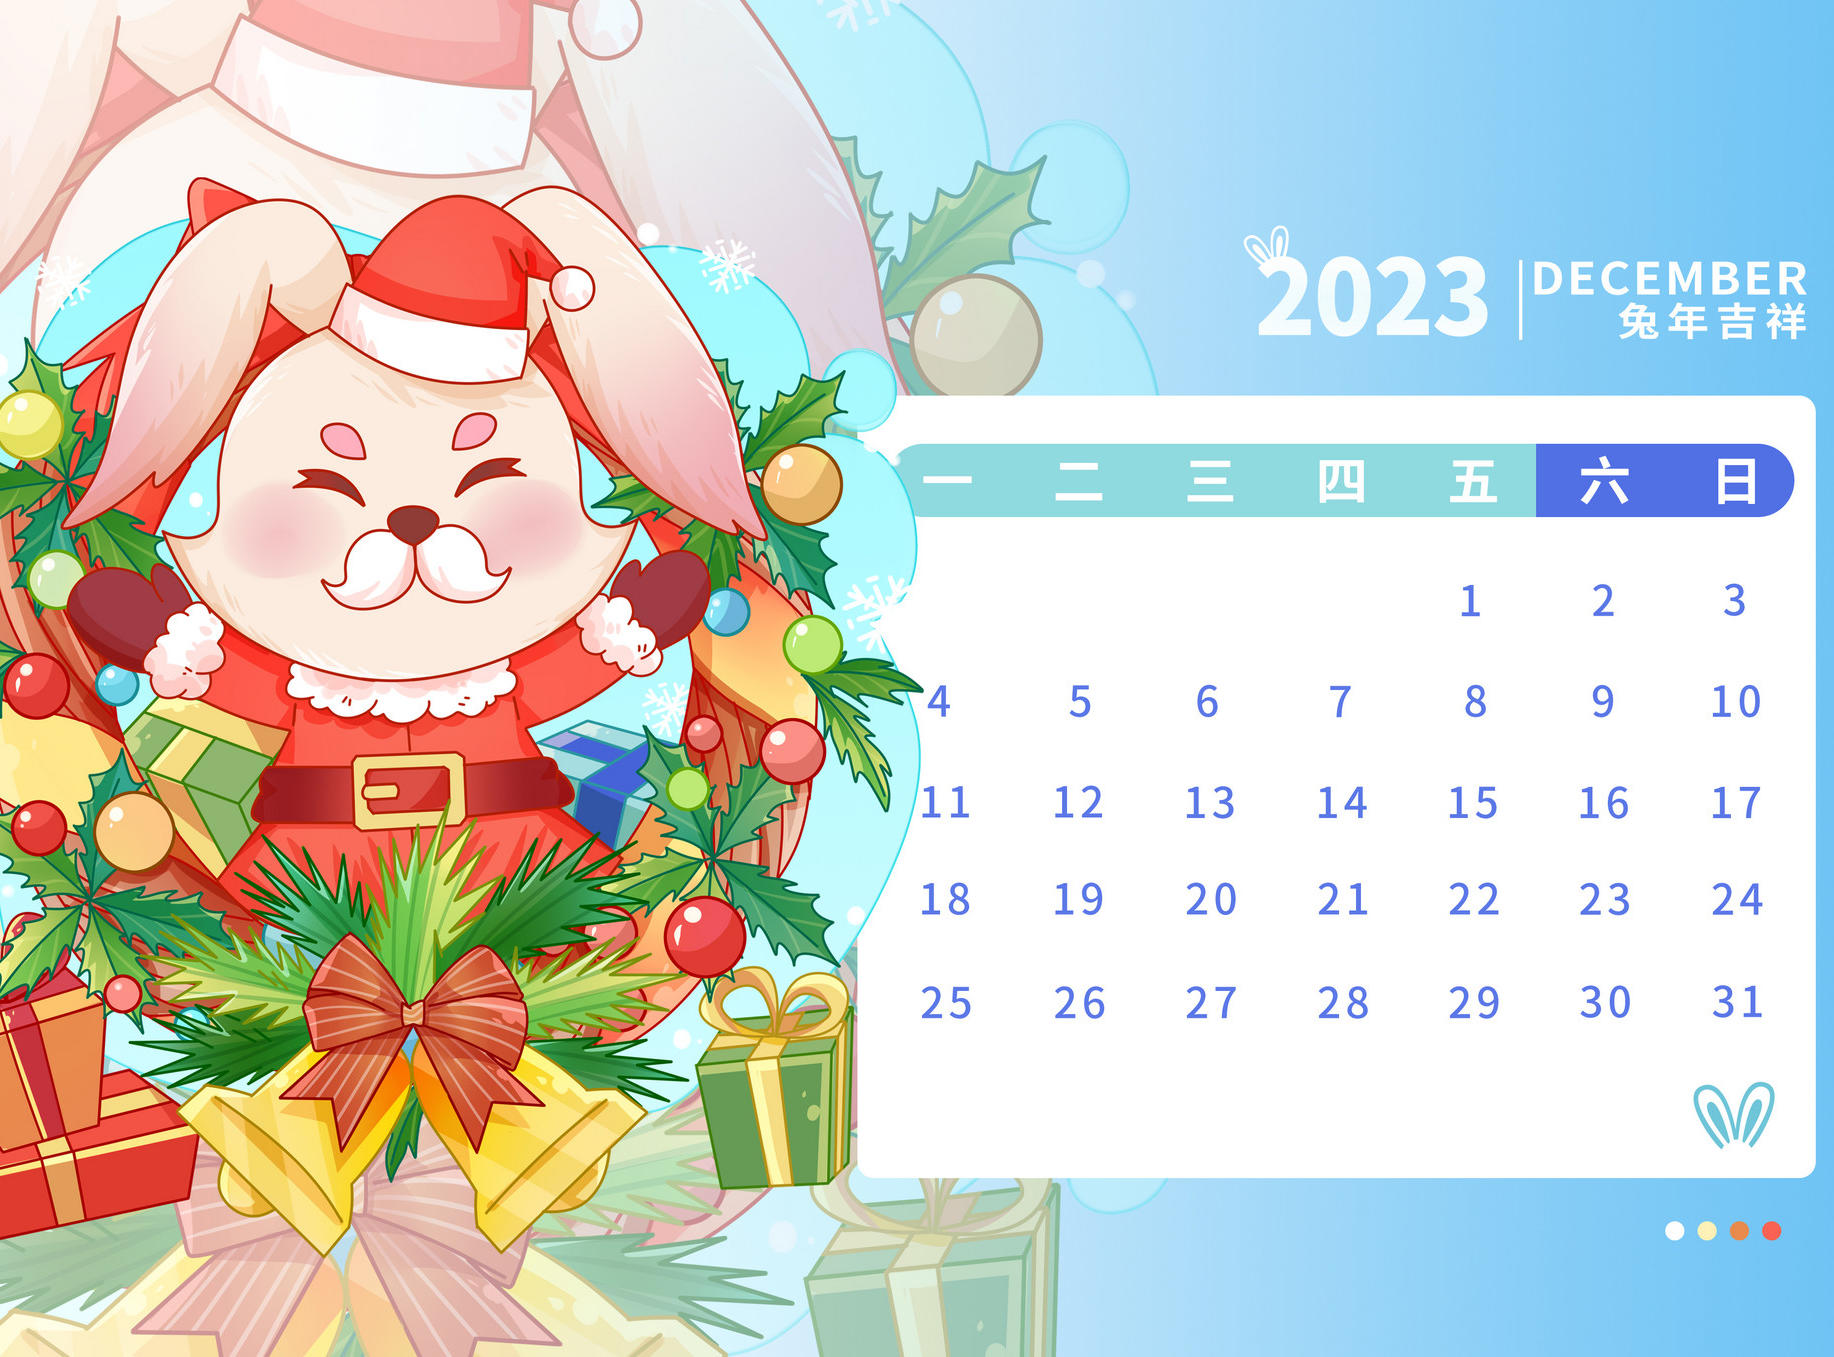 12月营销热点日历丨大雪、冬至、双12、圣诞节、跨年、年终总结